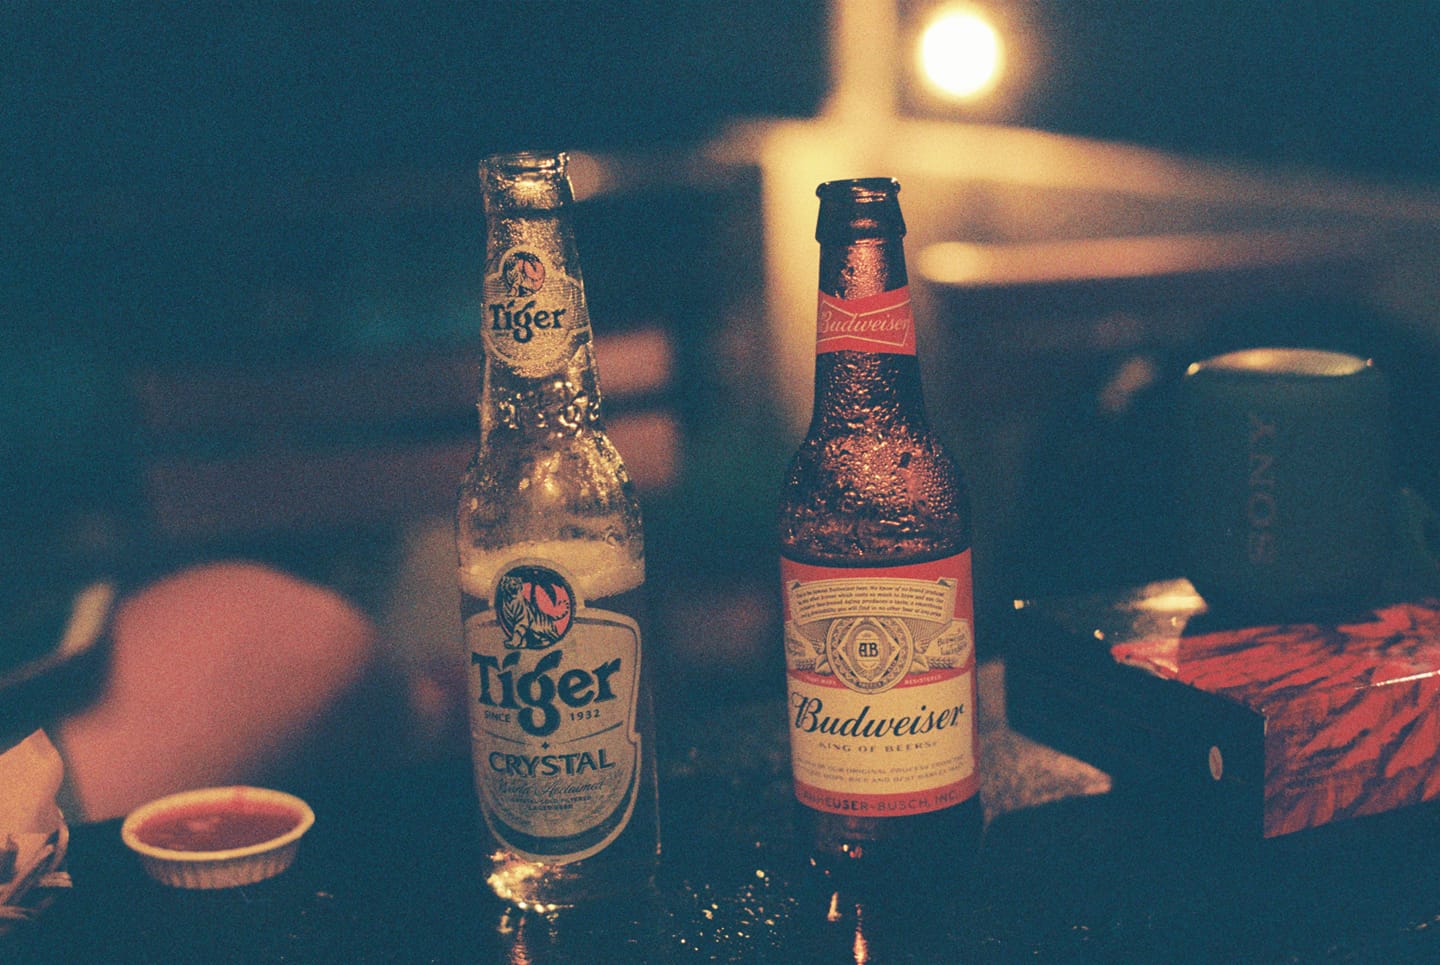 Với hương vị khác biệt và độc đáo, Bia Sài Gòn đã trở thành một trong những thương hiệu tên tuổi của Việt Nam. Đến và trải nghiệm hương vị bia đích thực từ Bia Sài Gòn.